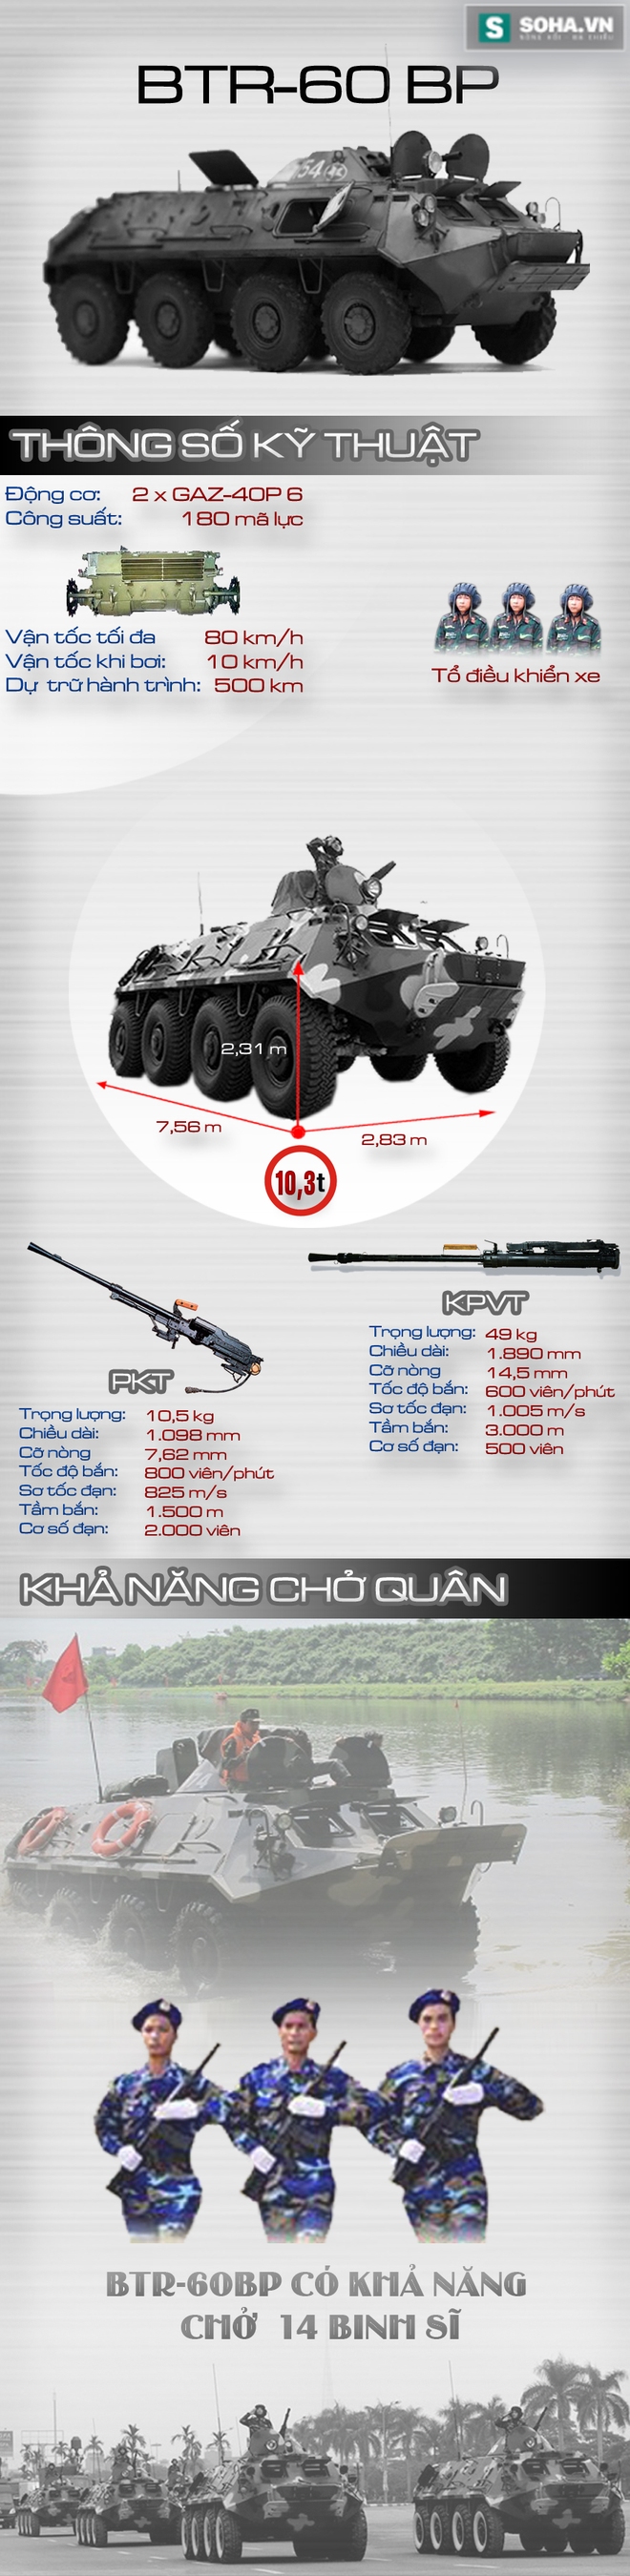 Xe thiết giáp chở quân tốt nhất trong biên chế QĐND Việt Nam - Ảnh 1.